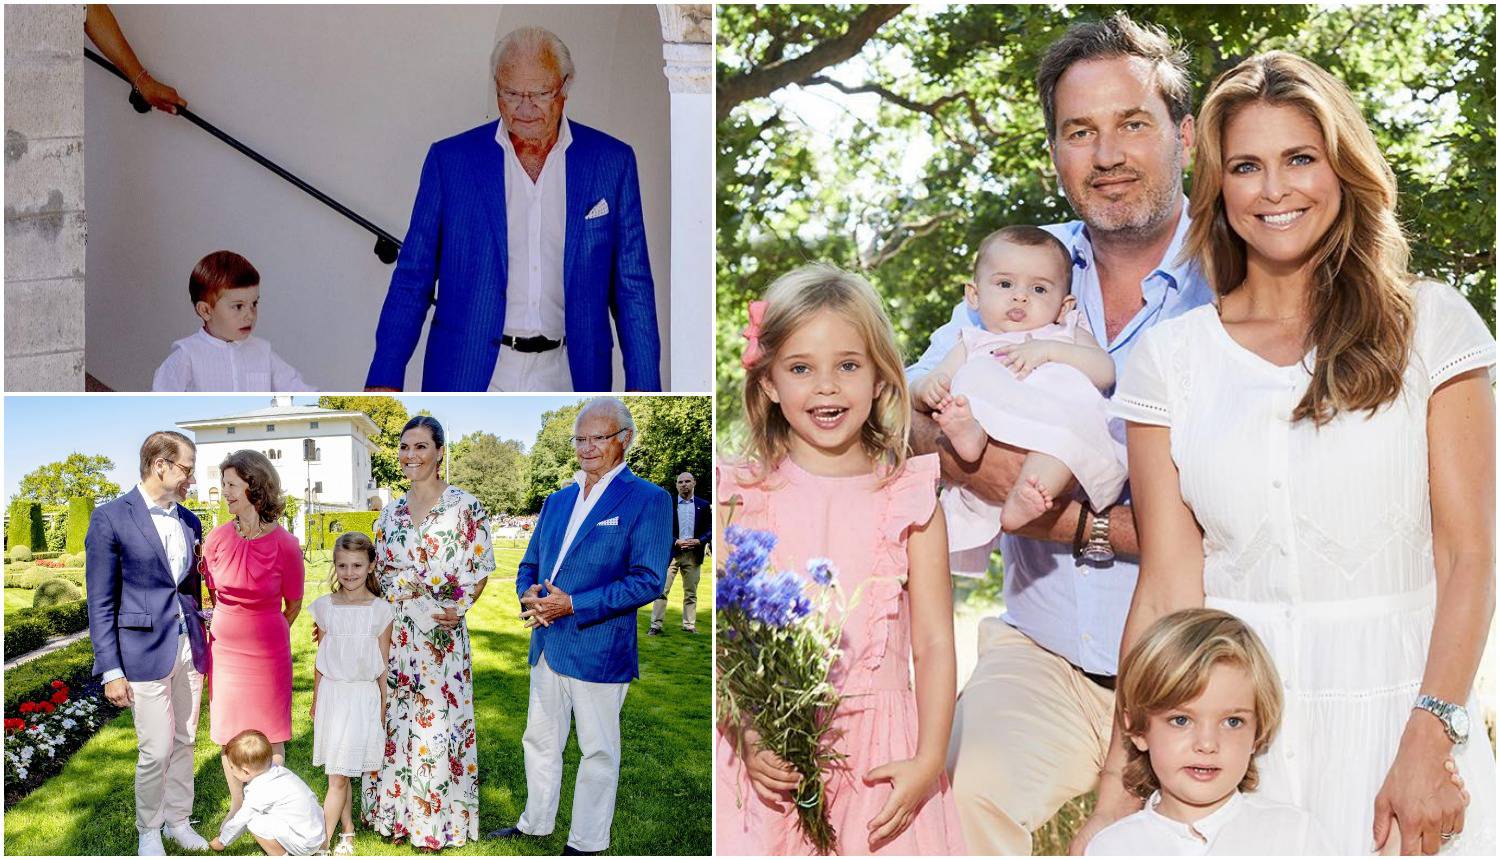 Švedski kralj odlučio: 'Unučad više nije dio kraljevske obitelji'